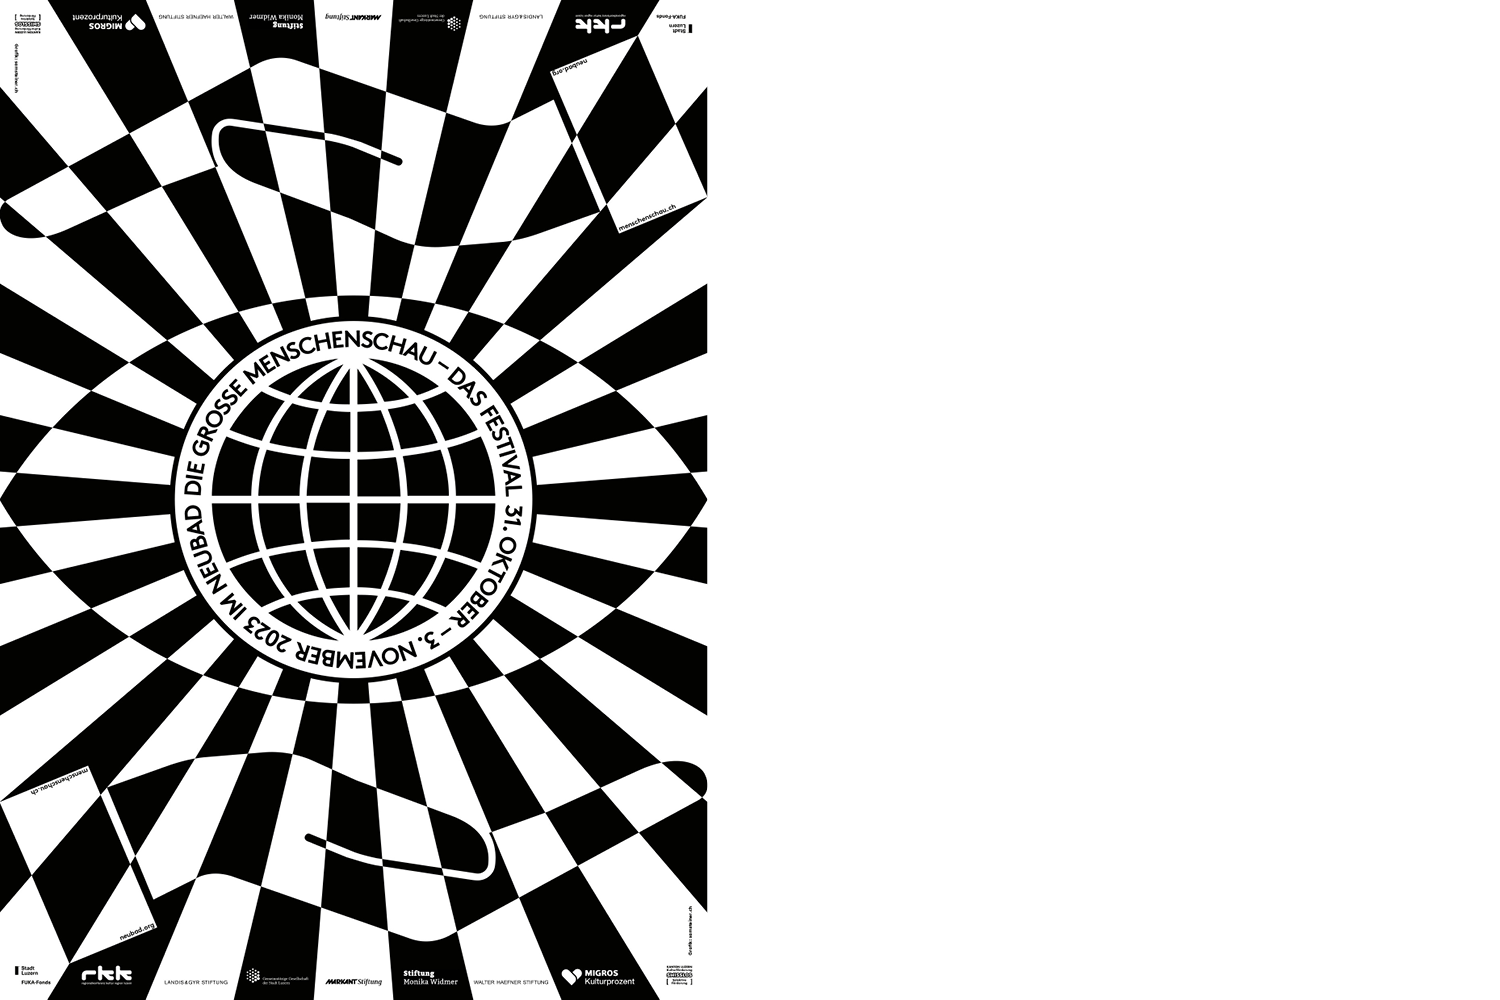 Ein Auge in der Mitte des Plakats. Die Iris ist als Weltkugel dargestellt. Das Auge wird umrahmt von zwei Händen (oben und unten). Alles ist in schwarz-weissen Kacheln dargestellt.